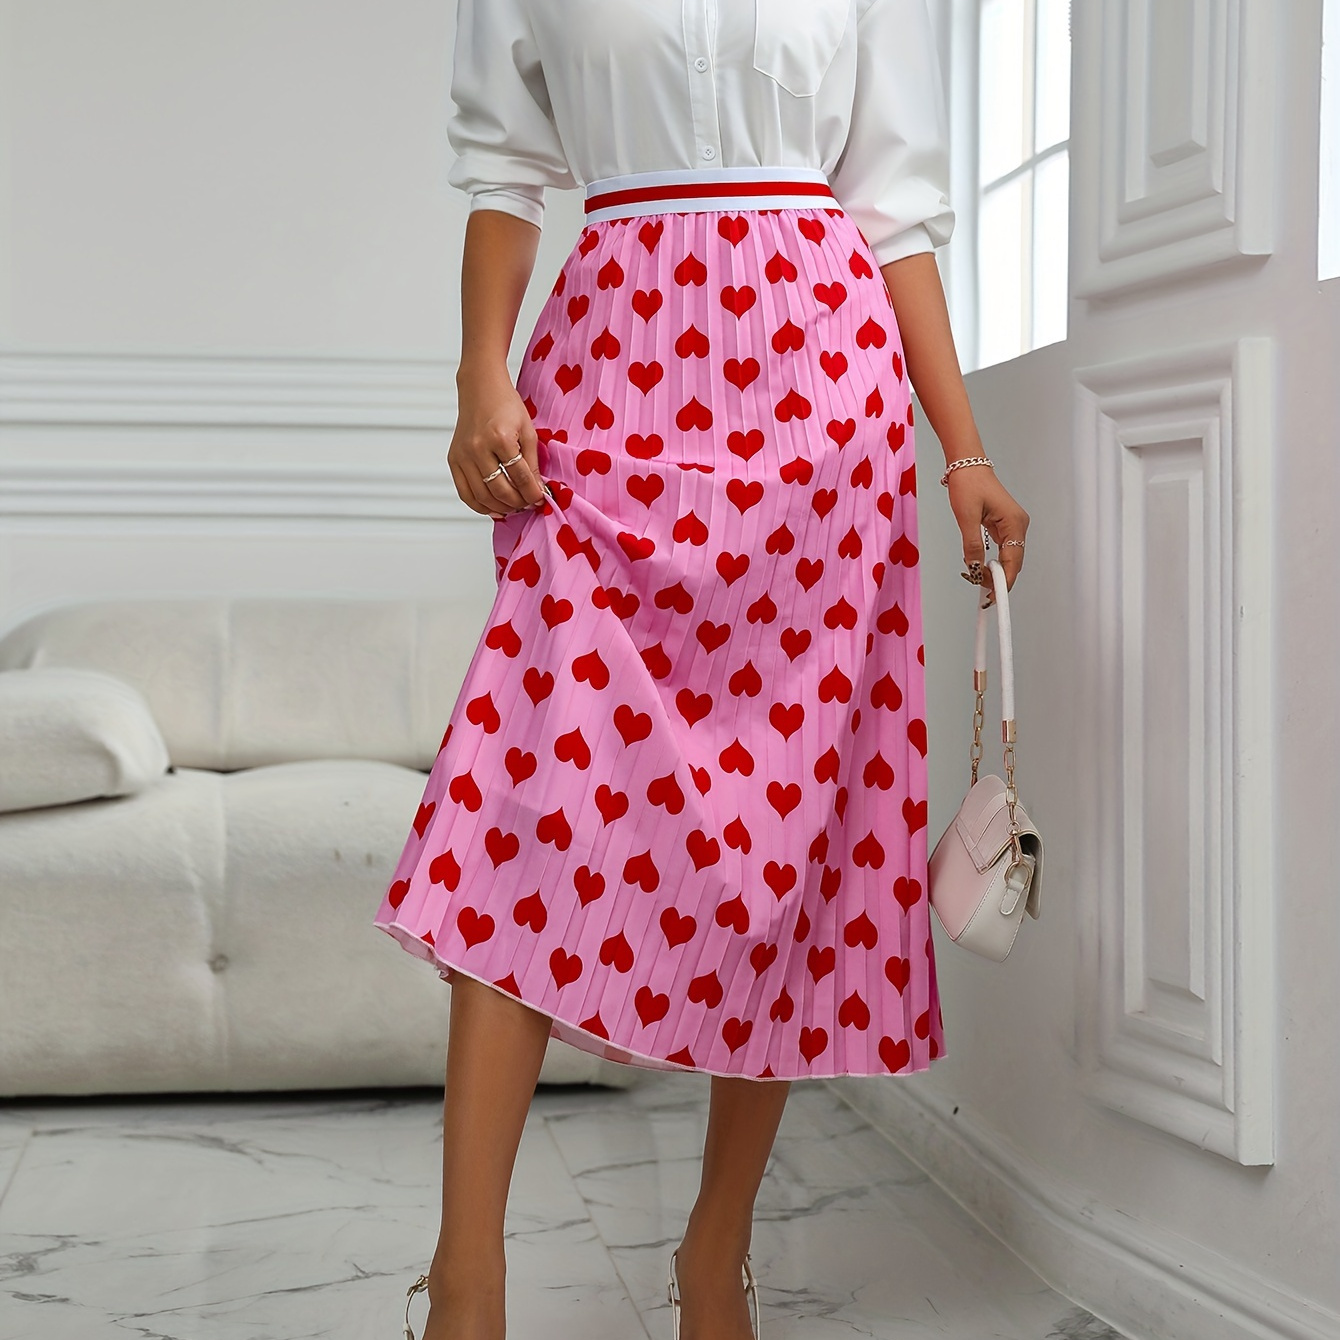 

Heart Print Pleated High Waist Skirt, Elegant Ankle Length Swing Skirt, Women's Clothing